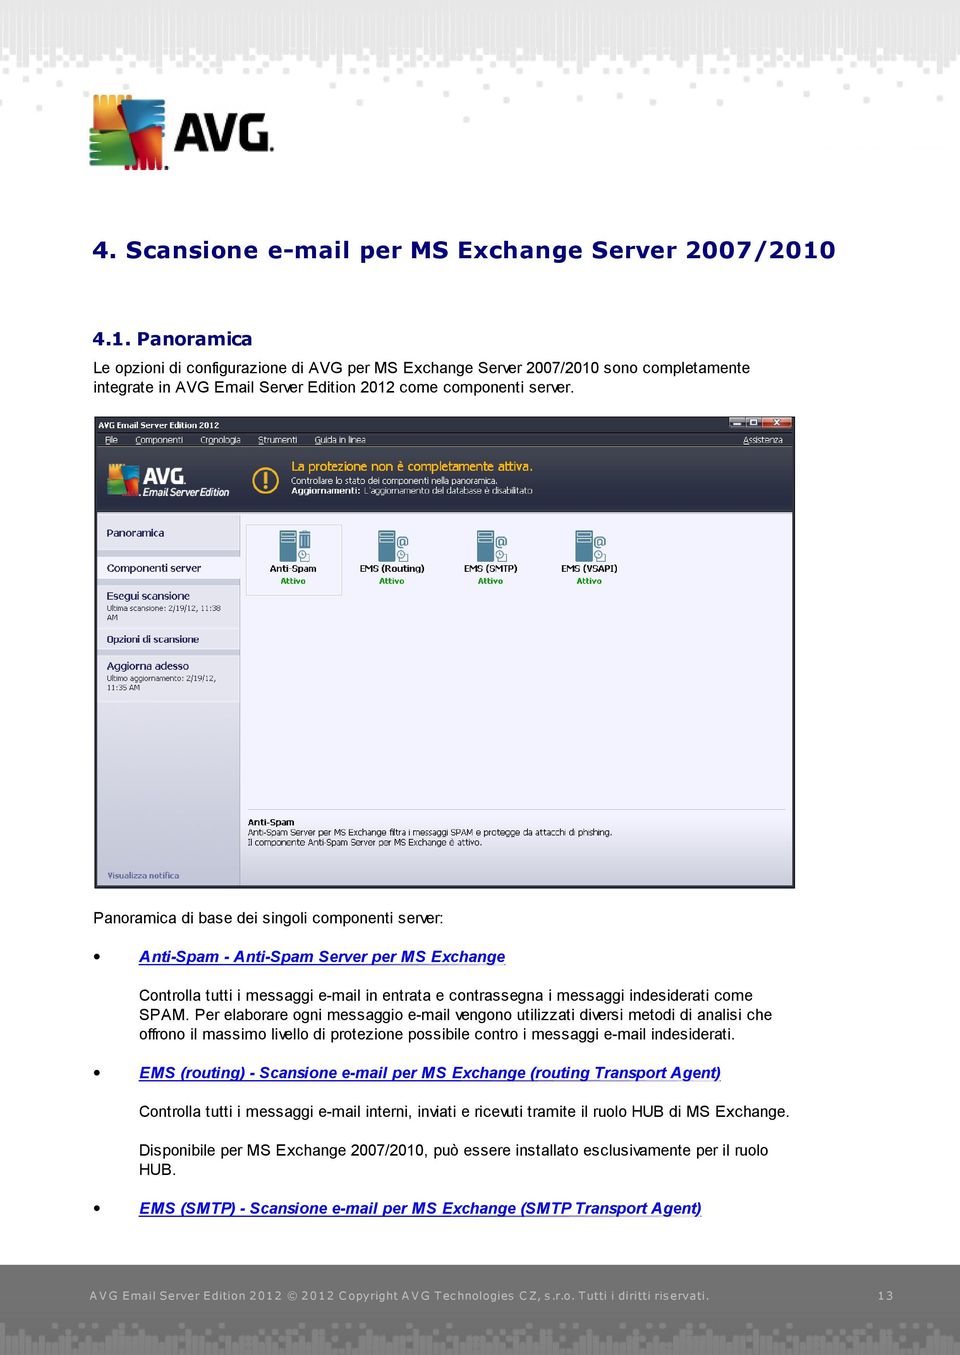 Panoramica di base dei singoli componenti server: Anti-Spam - Anti-Spam Server per MS Exchange Controlla tutti i messaggi e-mail in entrata e contrassegna i messaggi indesiderati come SPAM.